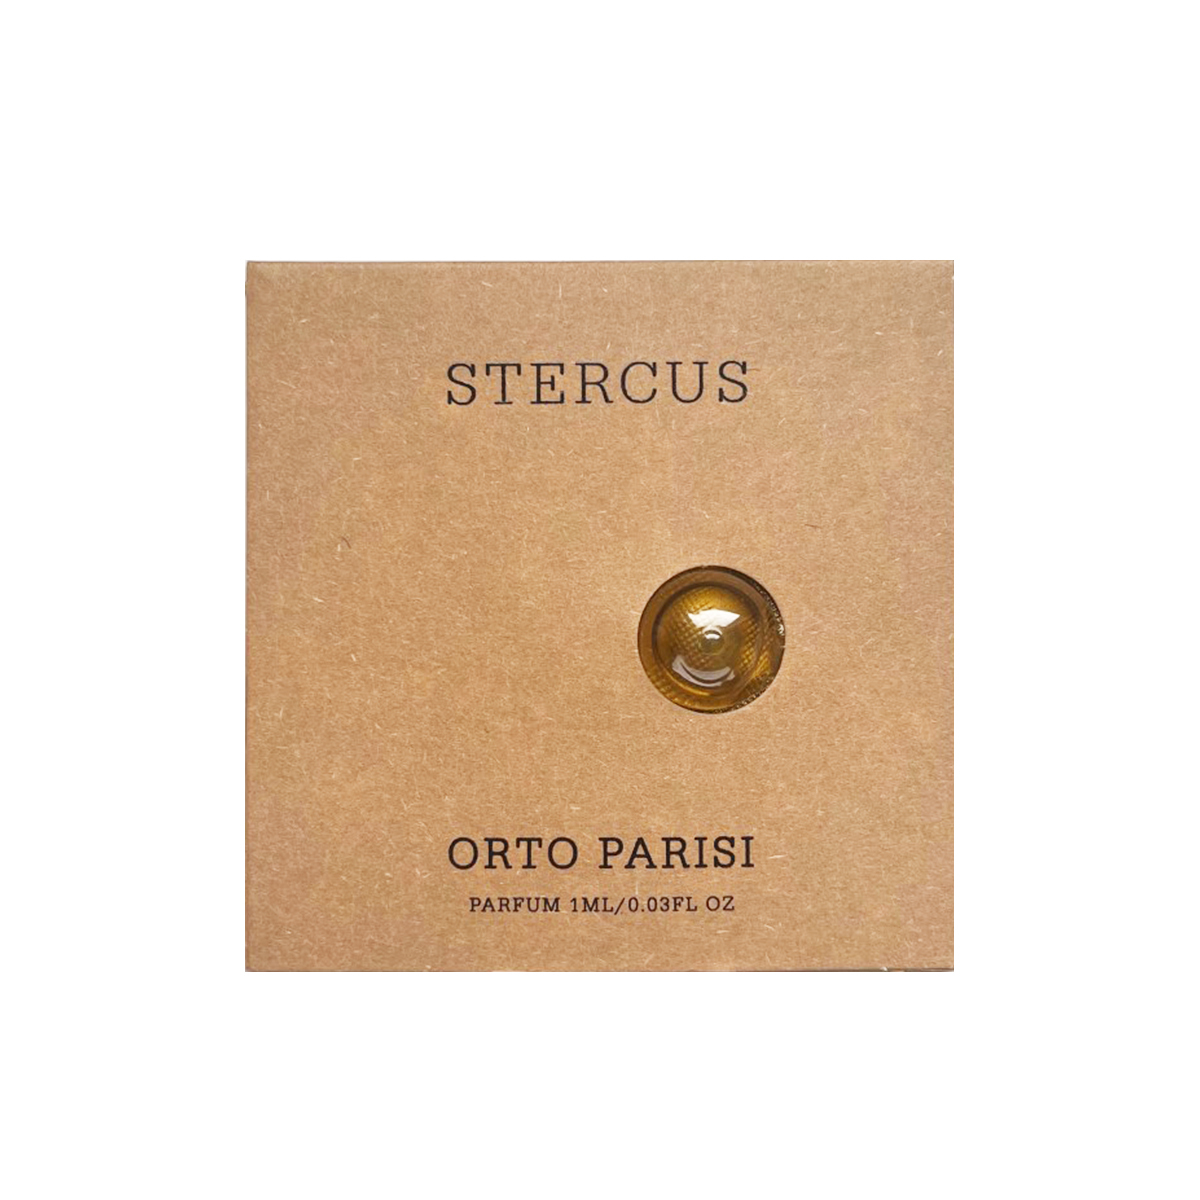 Orto Parisi Stercus Parfum: Official Stockist